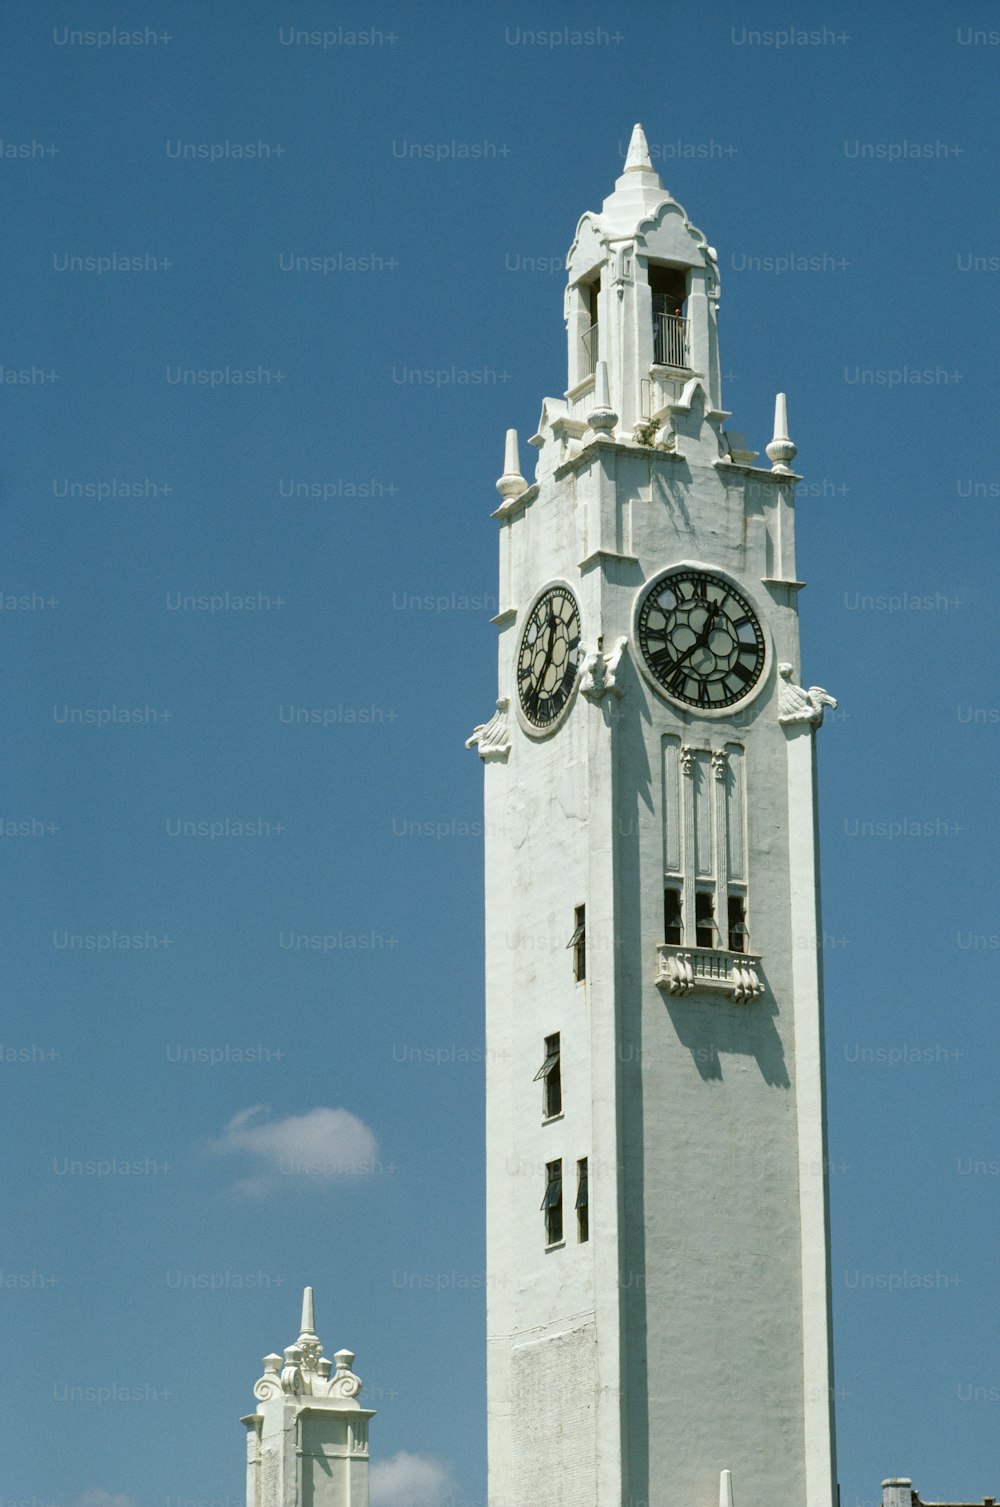 uma alta torre de relógio branca com um relógio em cada um de seus lados